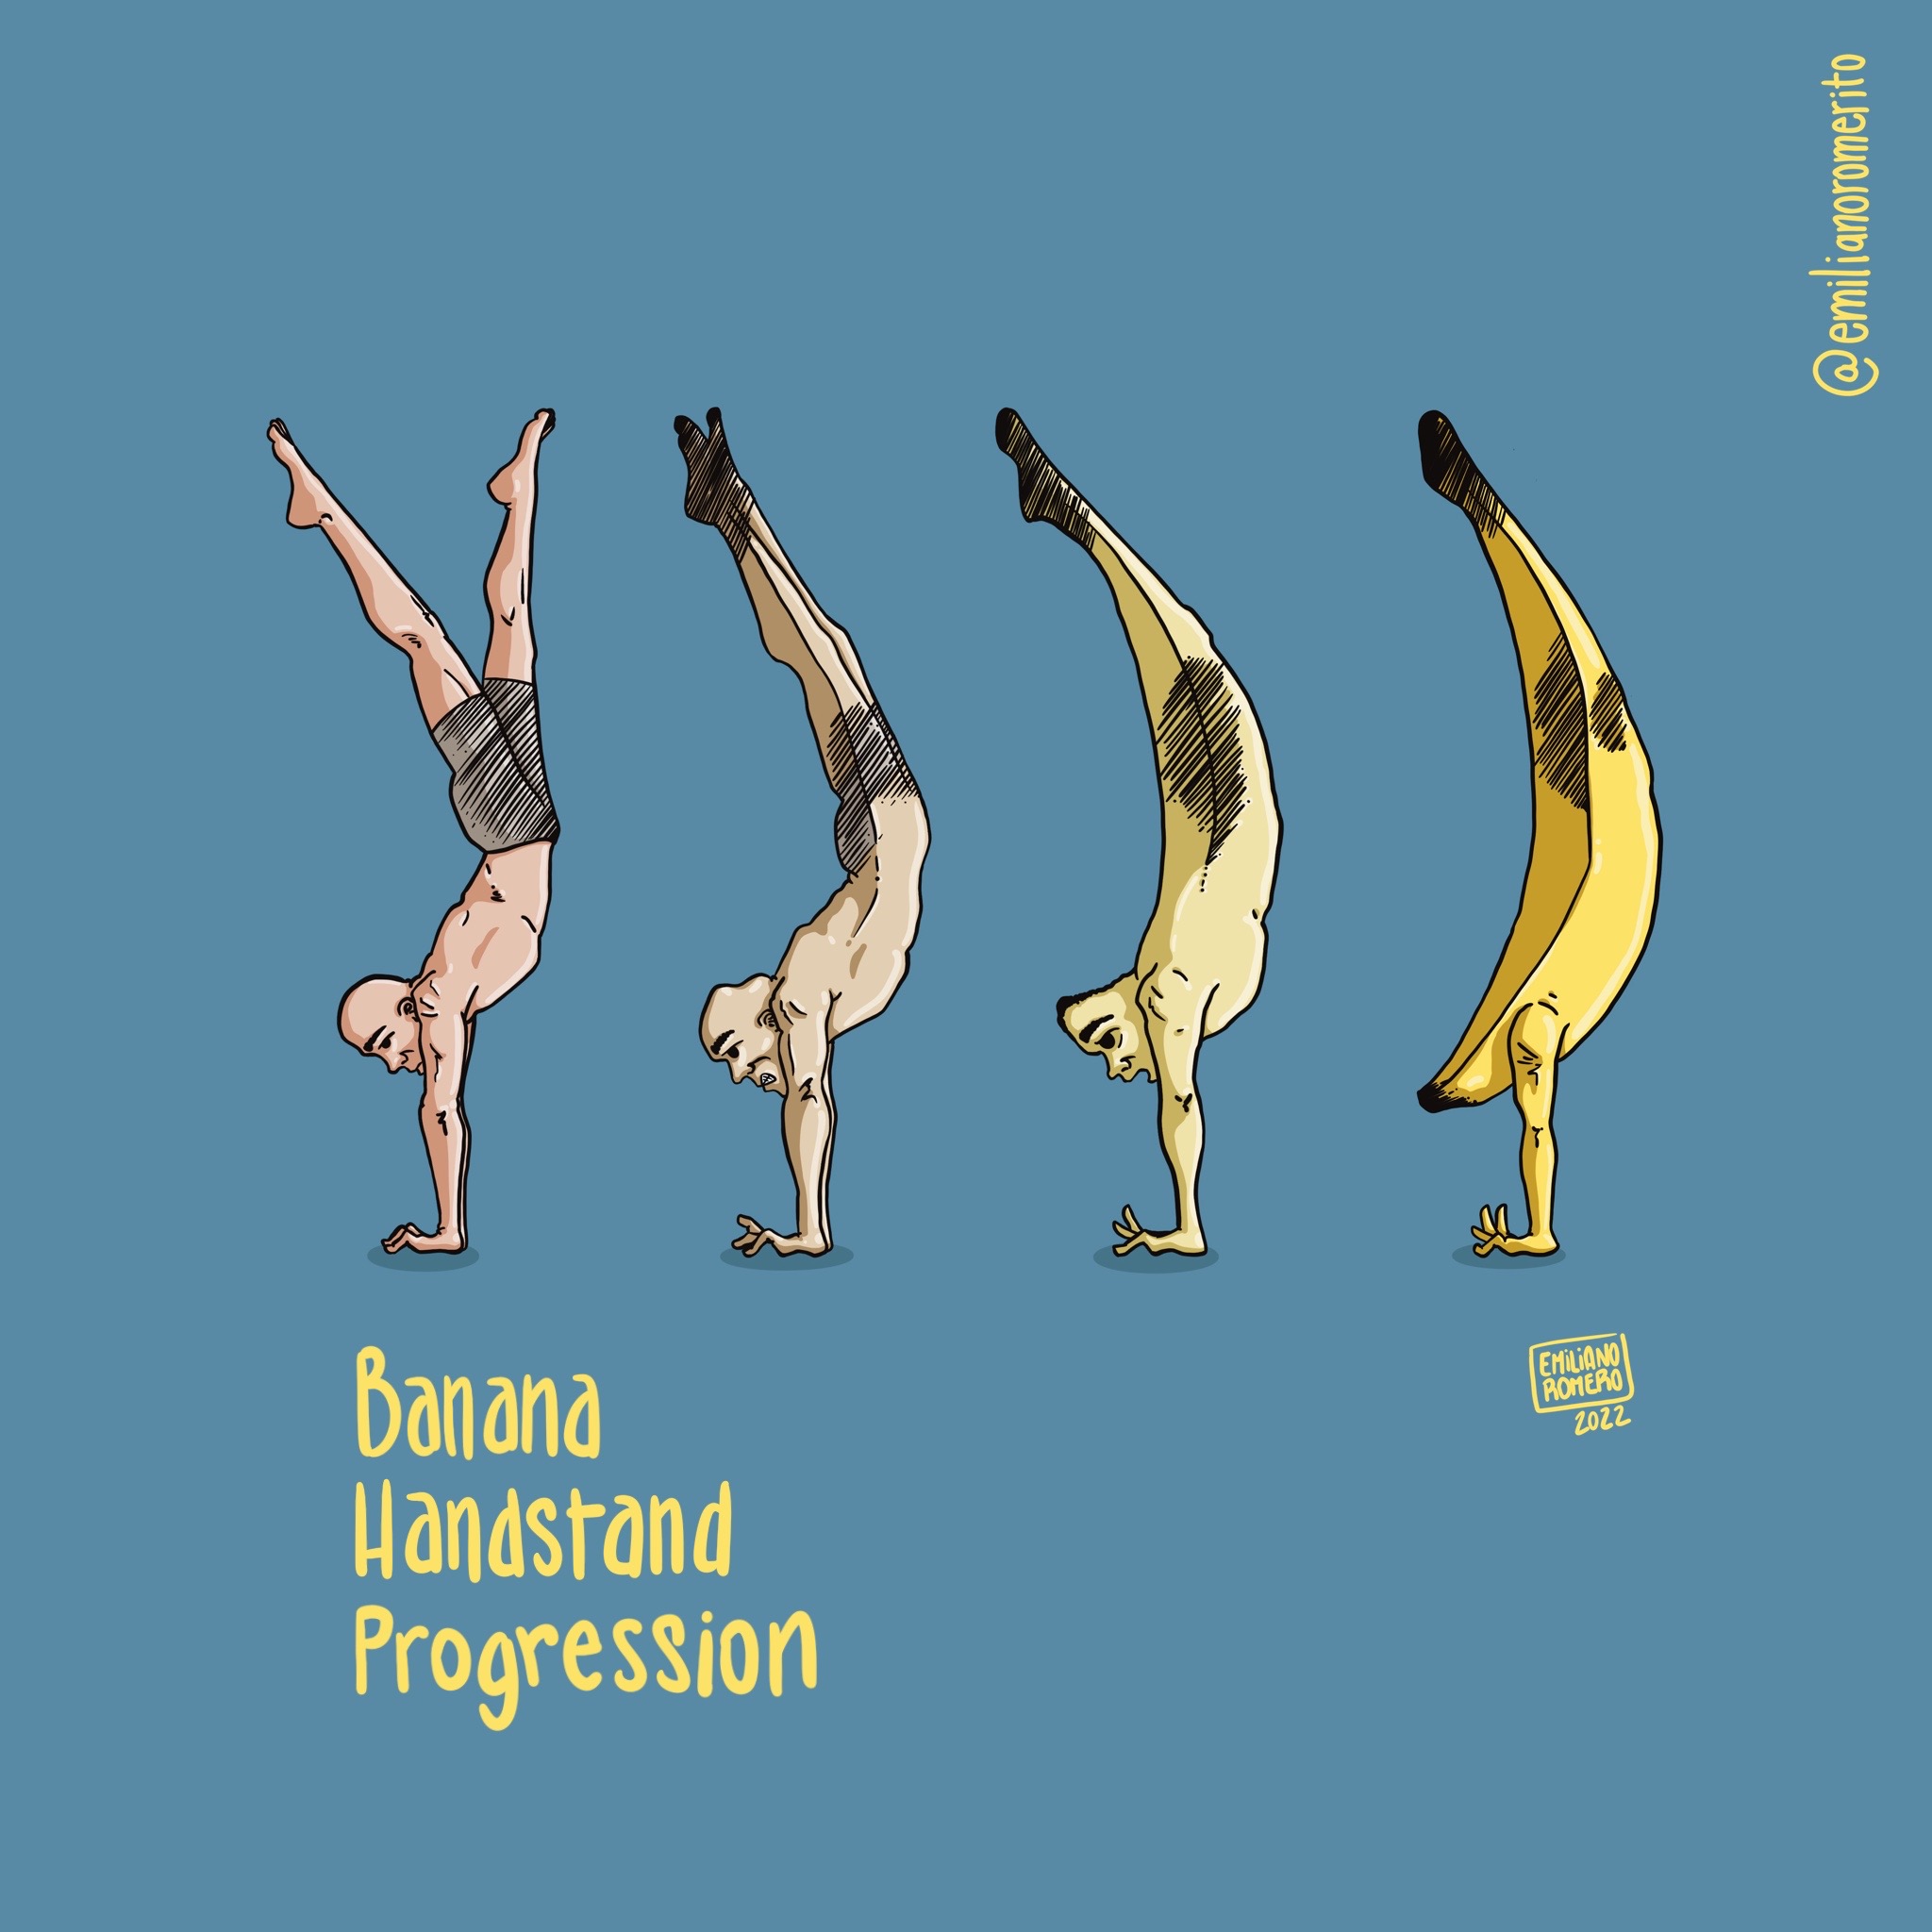 Emiliano_Romero_Design_Banana_Handstand_Progression_2022_02